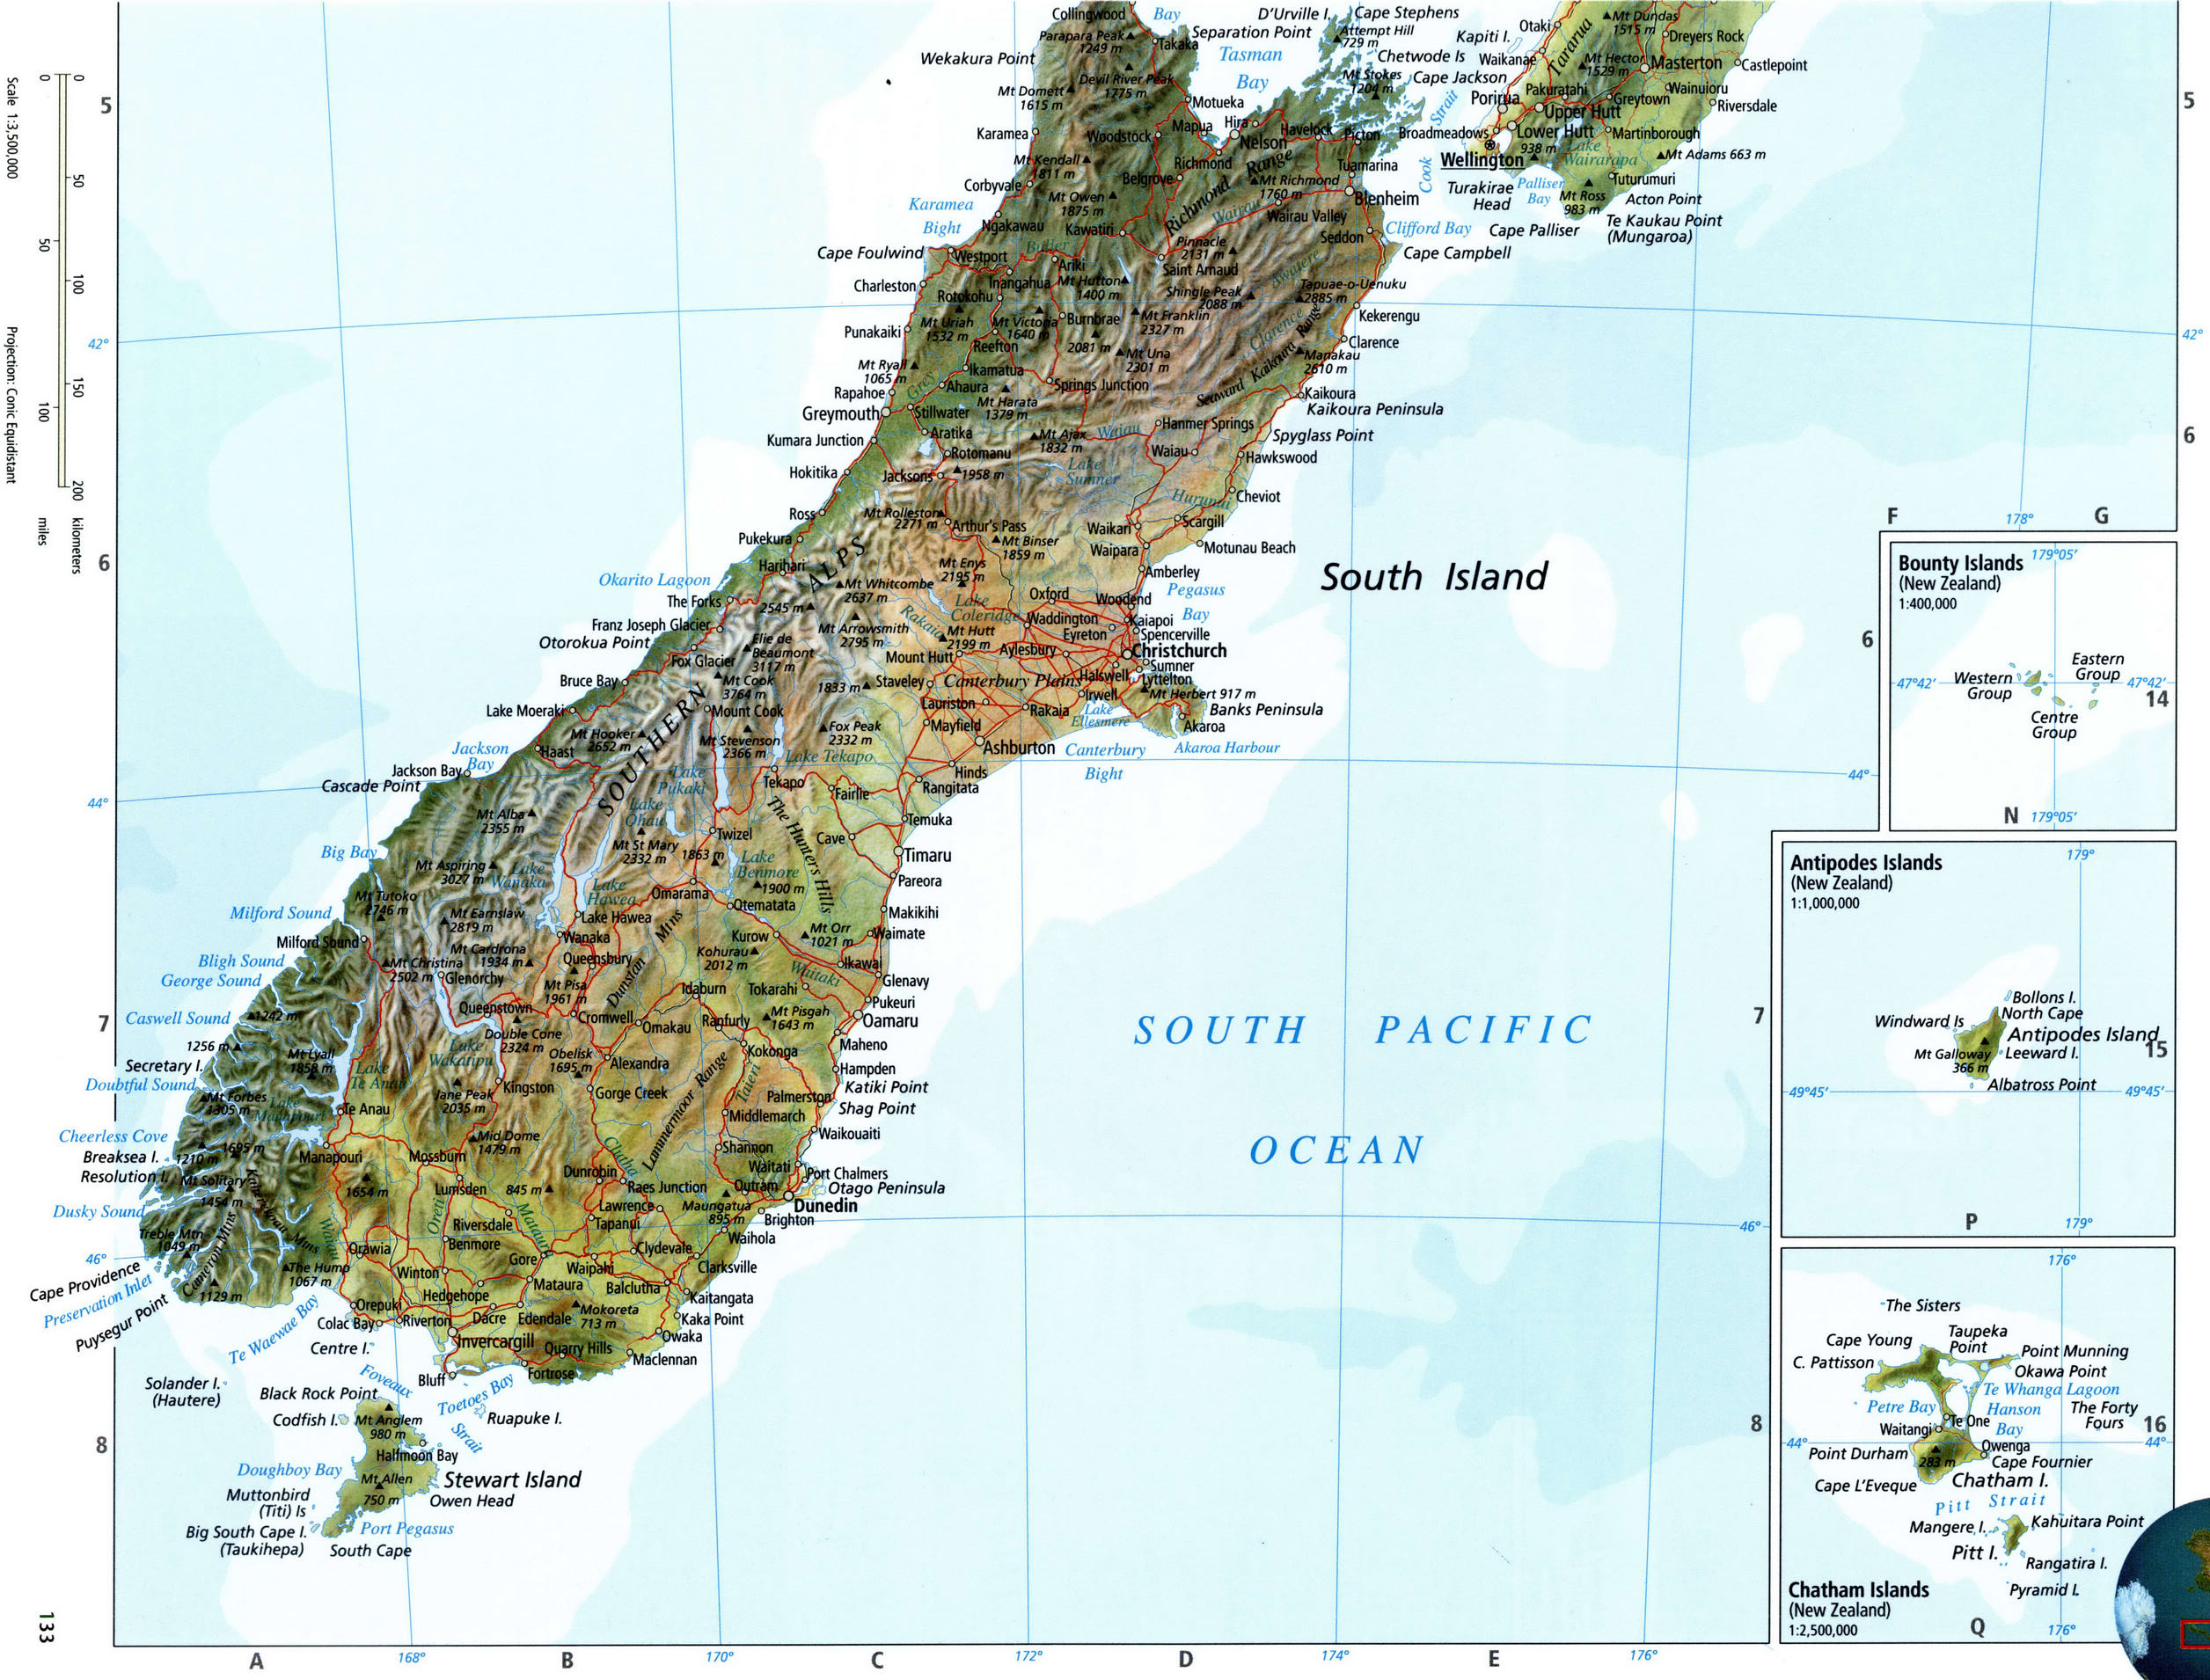 Острова баунти новая зеландия фото